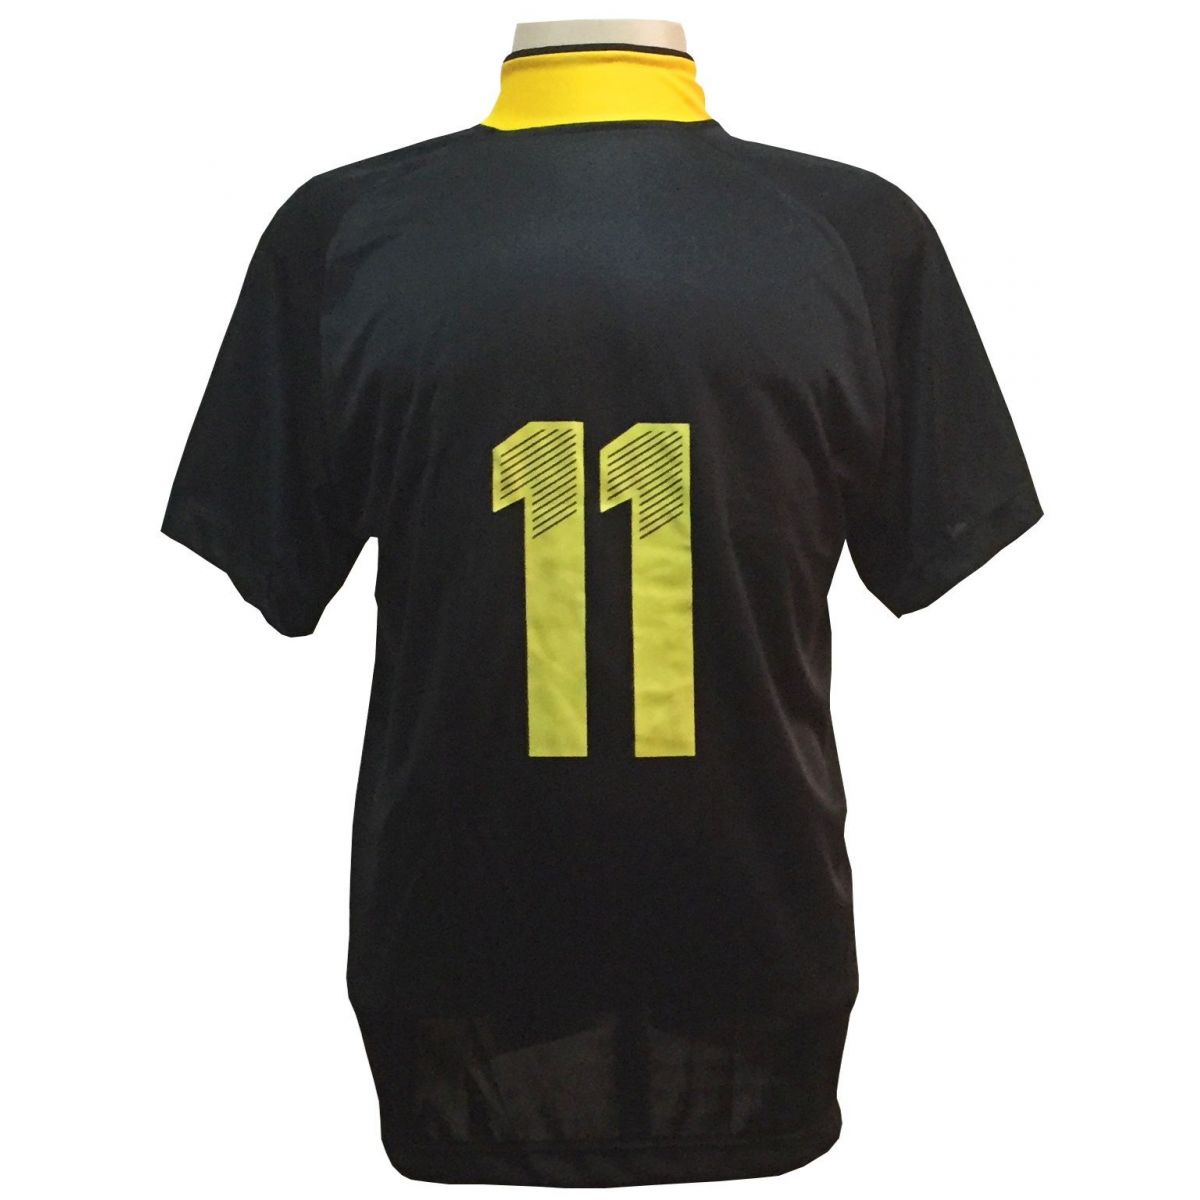 Fardamento Completo modelo Milan 20+2 (20 camisas Preto/Amarelo + 20 calções modelo Madrid Amarelo + 20 pares de meiões Preto + 2 conjuntos de goleiro) + Brindes